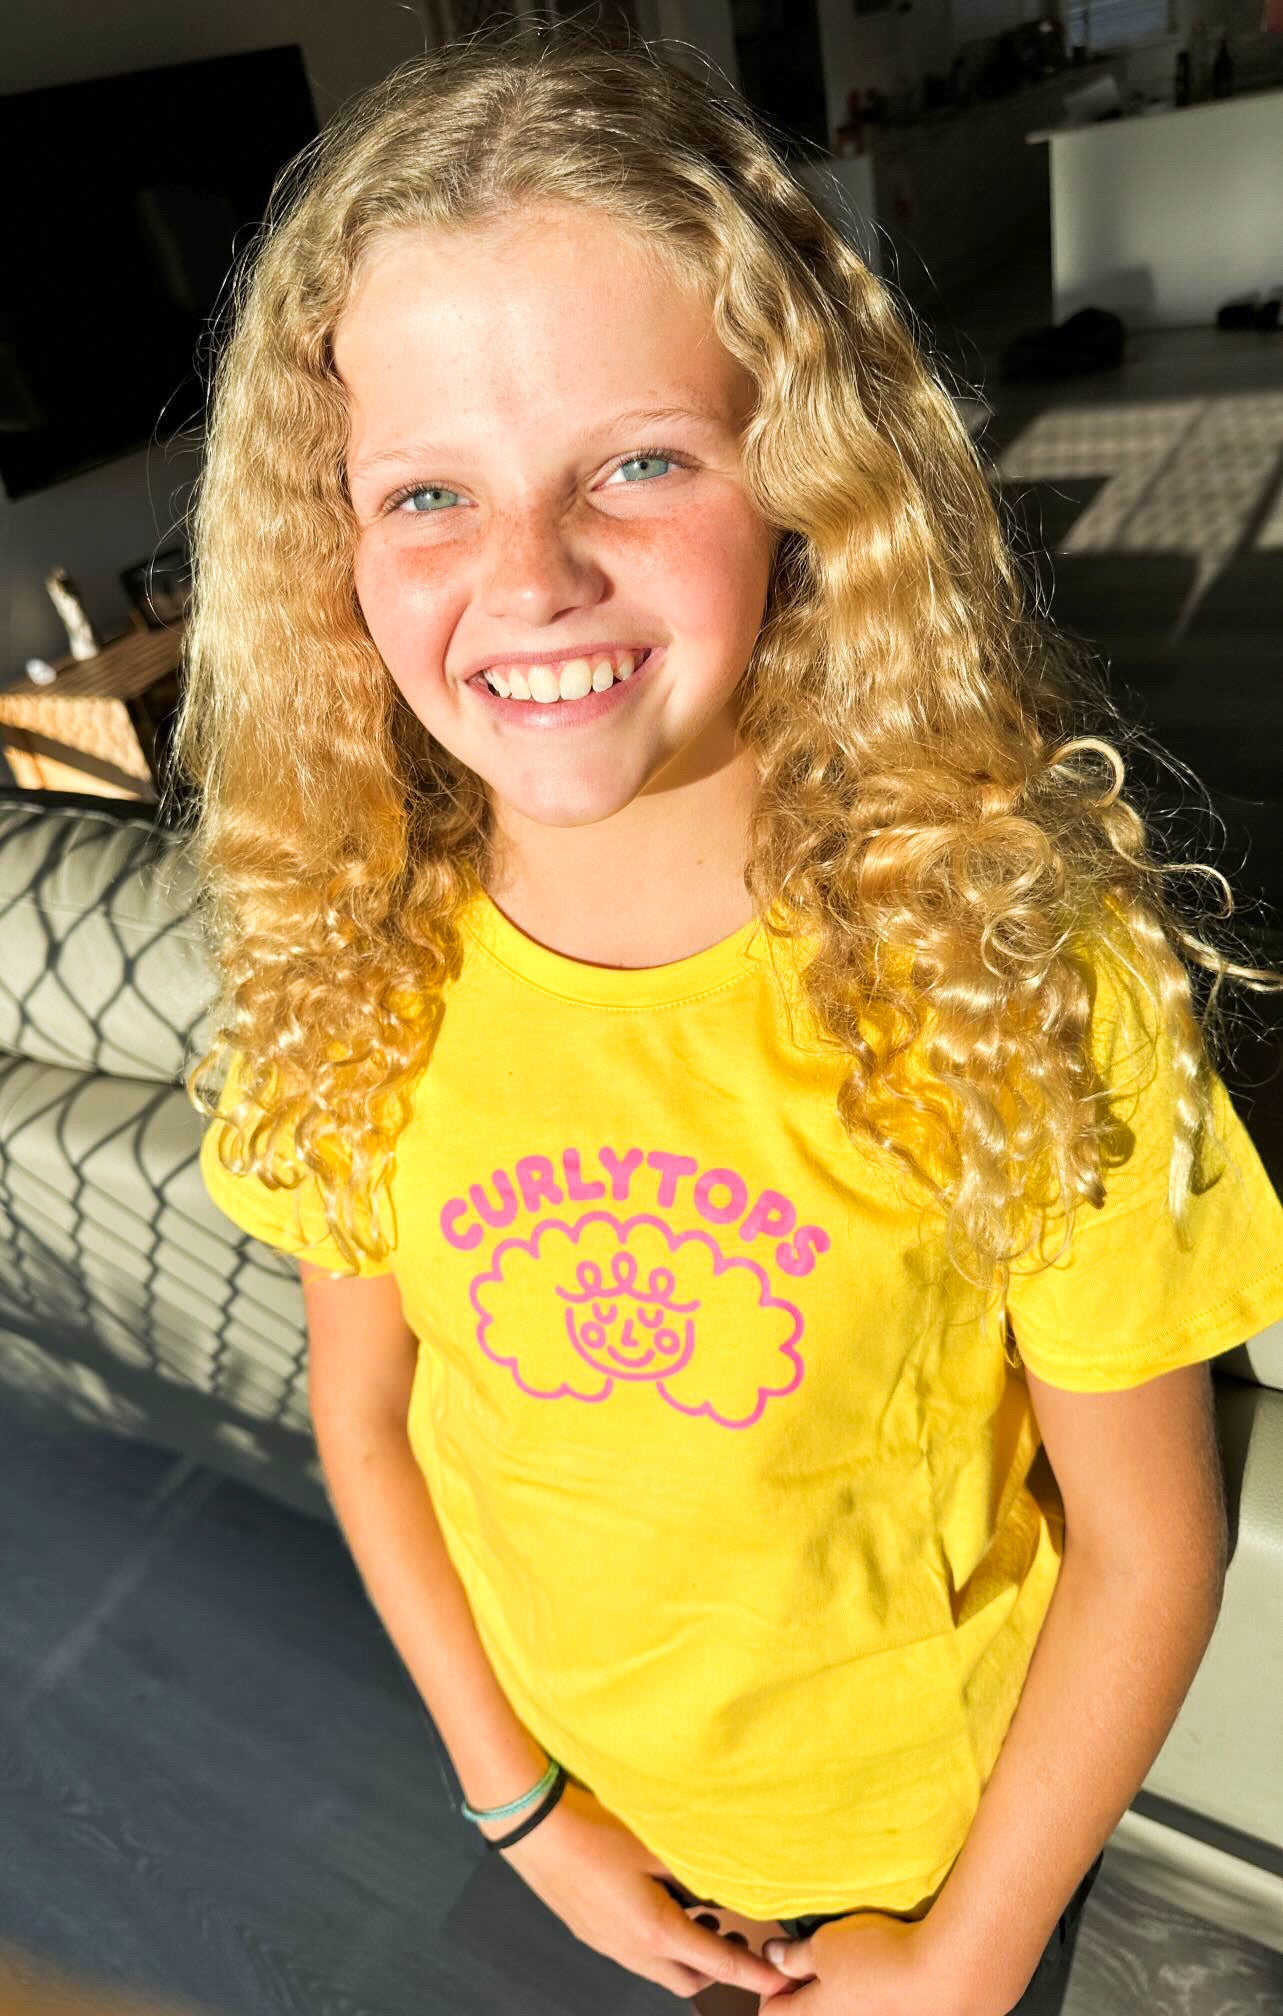 Josie Watts wearing Curlytops yellow t-shirt